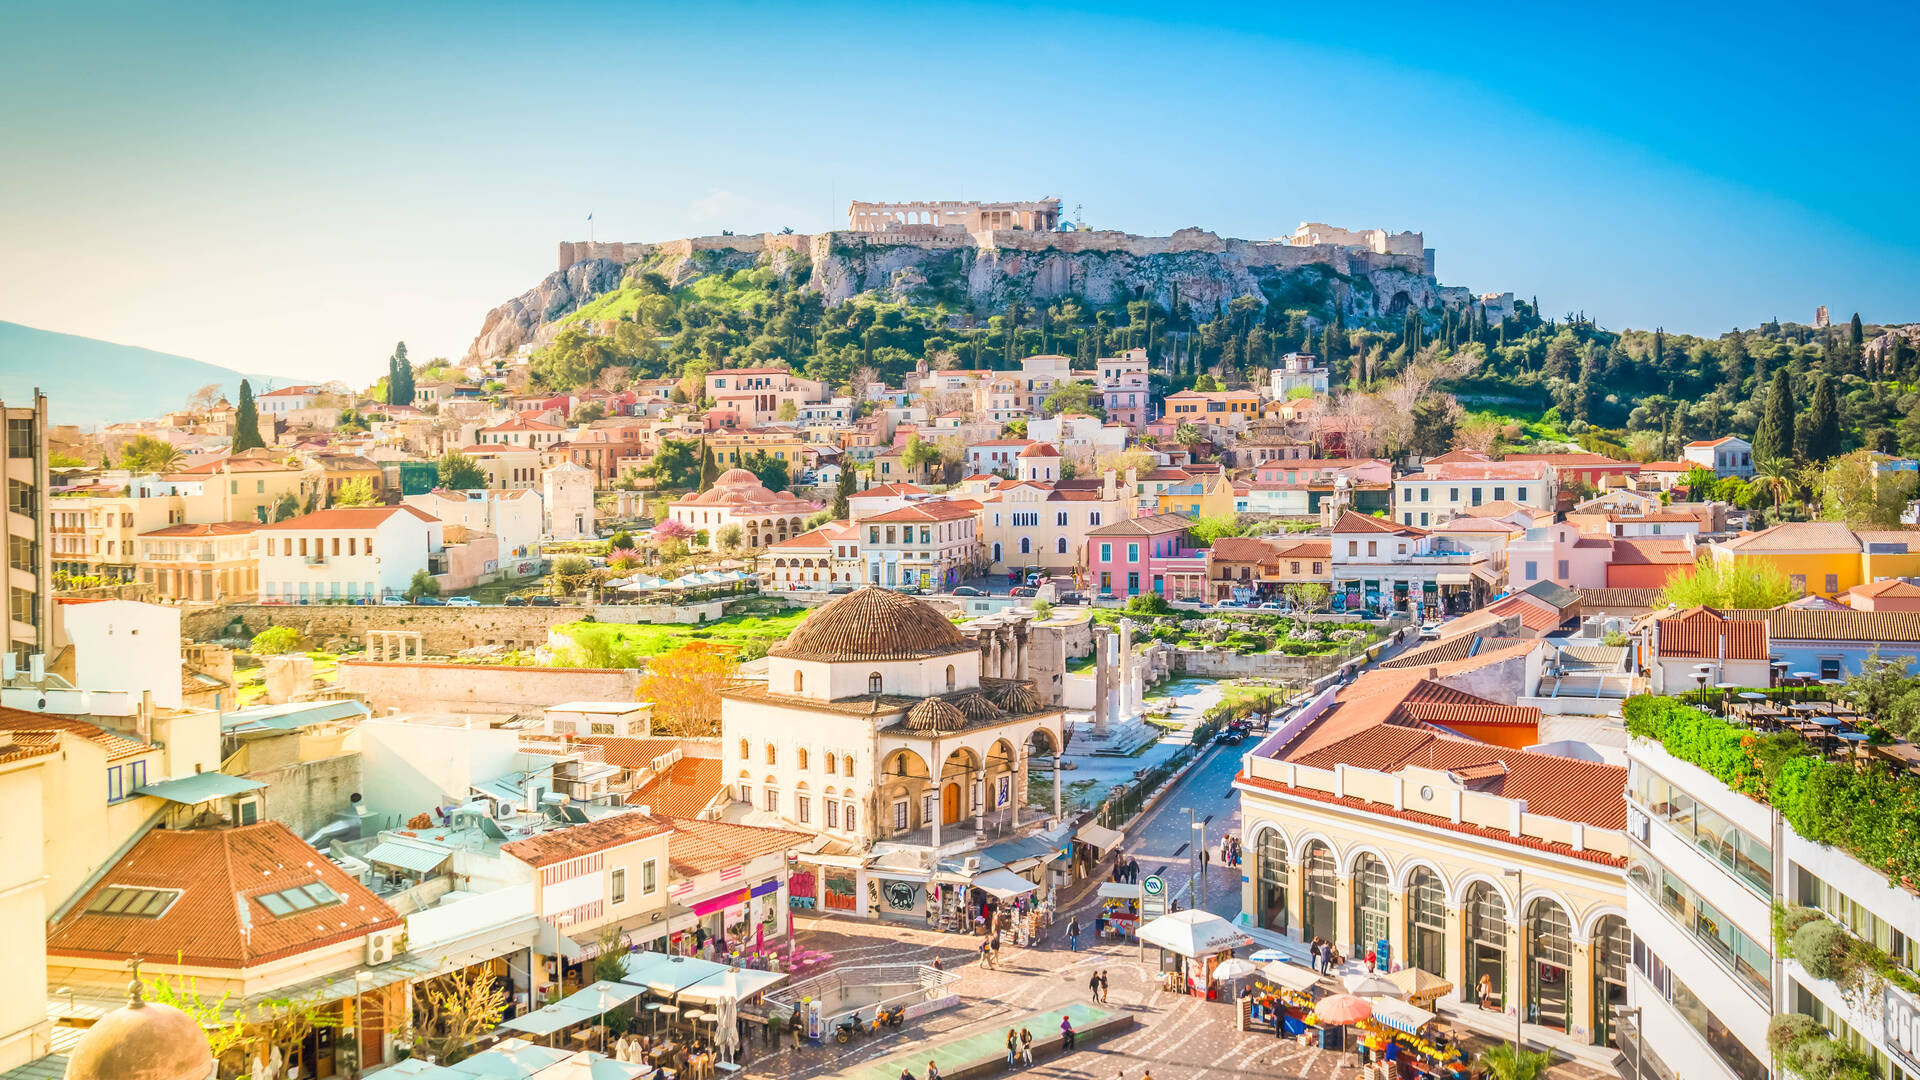 Athen Reisen und Billigflug - Griechenland - Hotels und Flug nach Athen